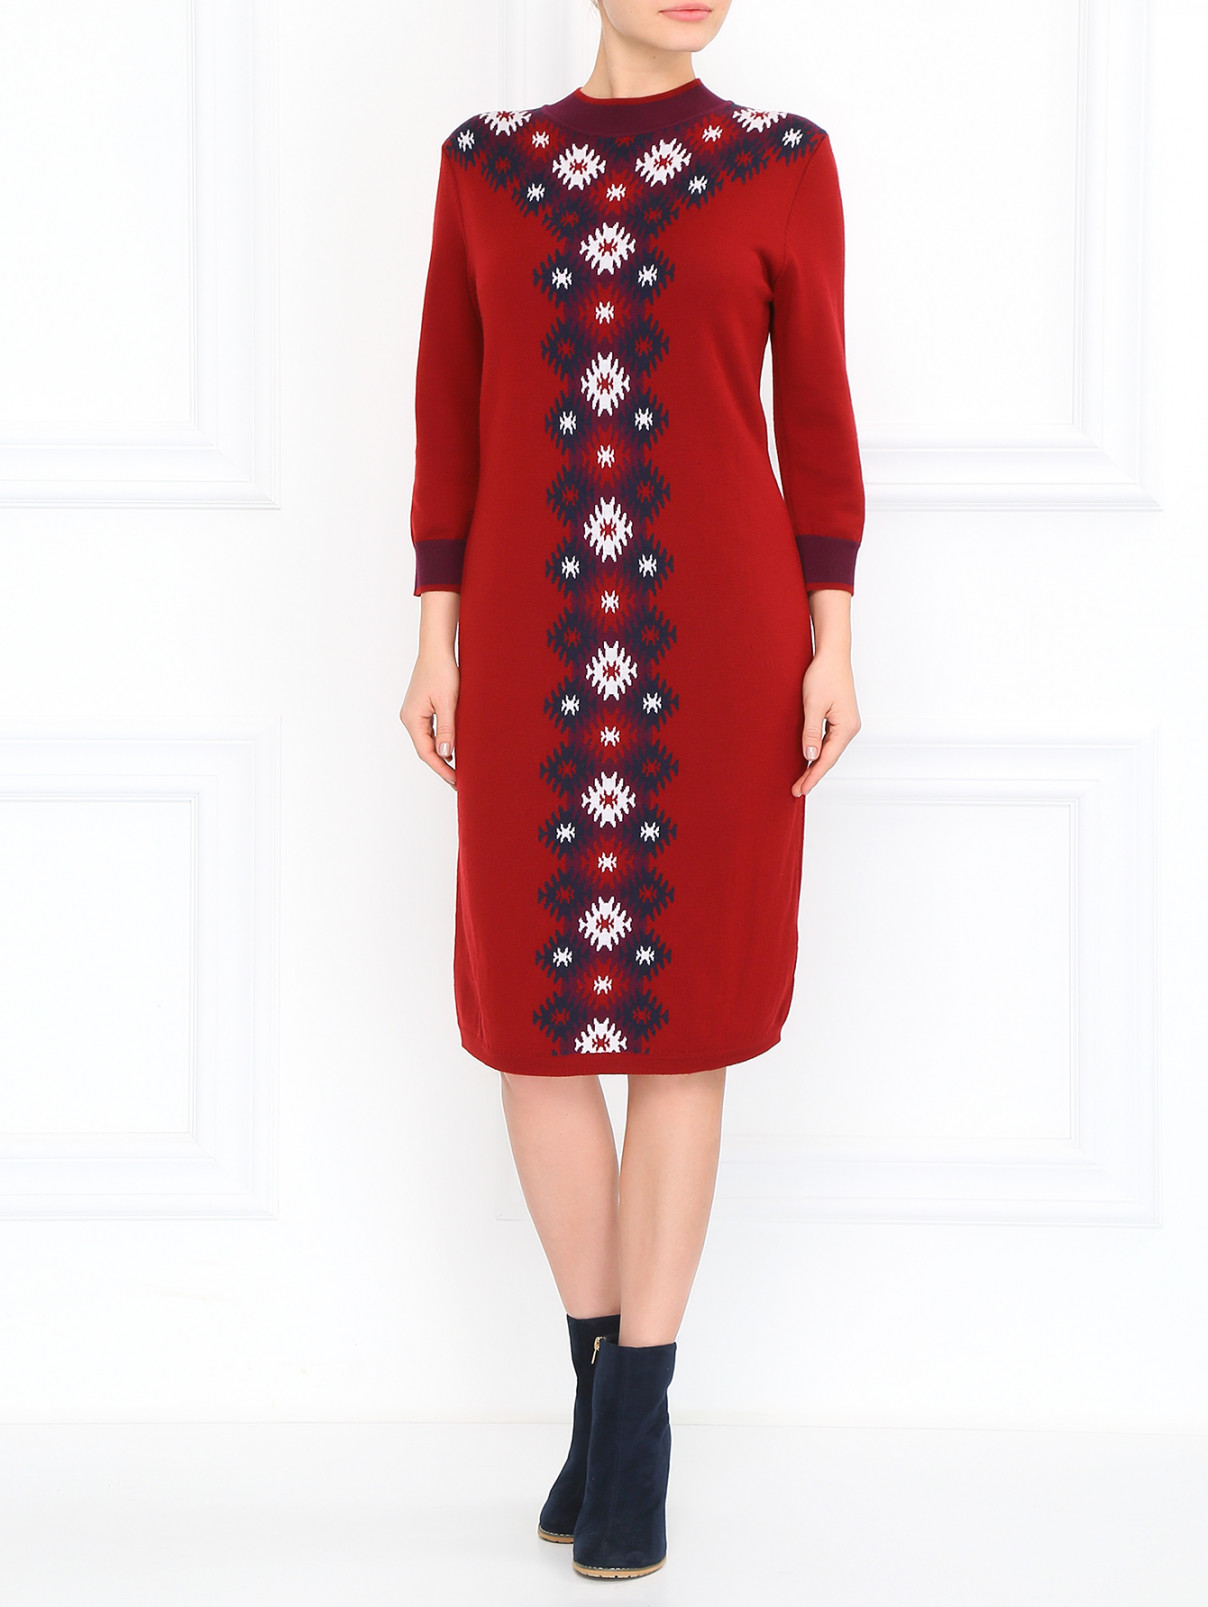 Платье из шерсти с цветочным принтом с рукавами 3/4 BOSCO  –  Модель Общий вид  – Цвет:  Красный